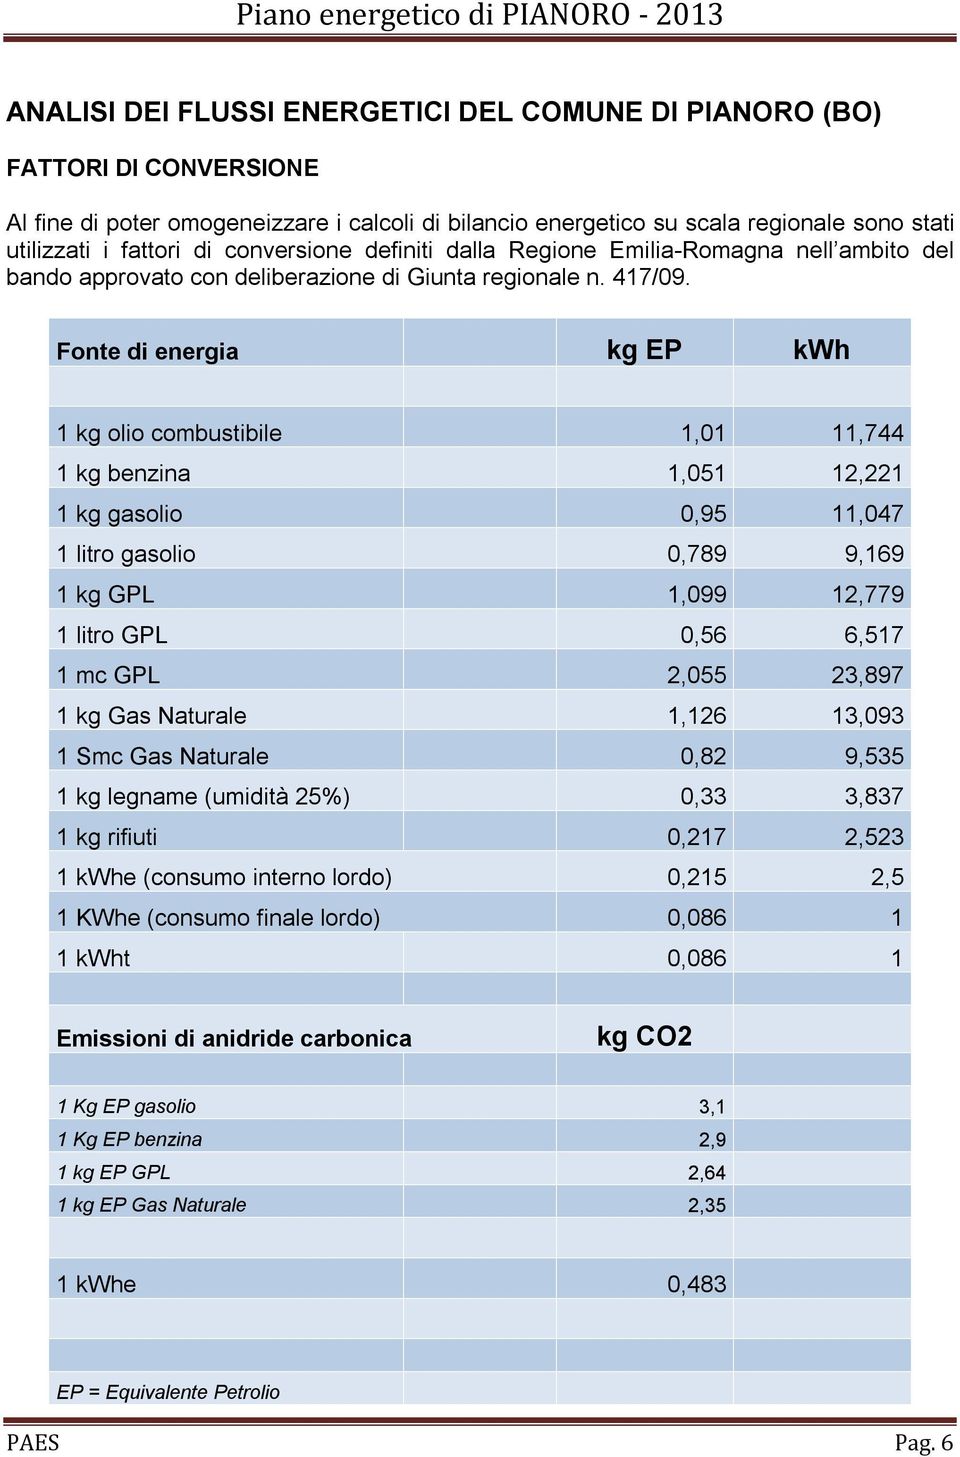 Fonte di energia kg EP kwh 1 kg olio combustibile 1,01 11,744 1 kg benzina 1,051 12,221 1 kg gasolio 0,95 11,047 1 litro gasolio 0,789 9,169 1 kg GPL 1,099 12,779 1 litro GPL 0,56 6,517 1 mc GPL